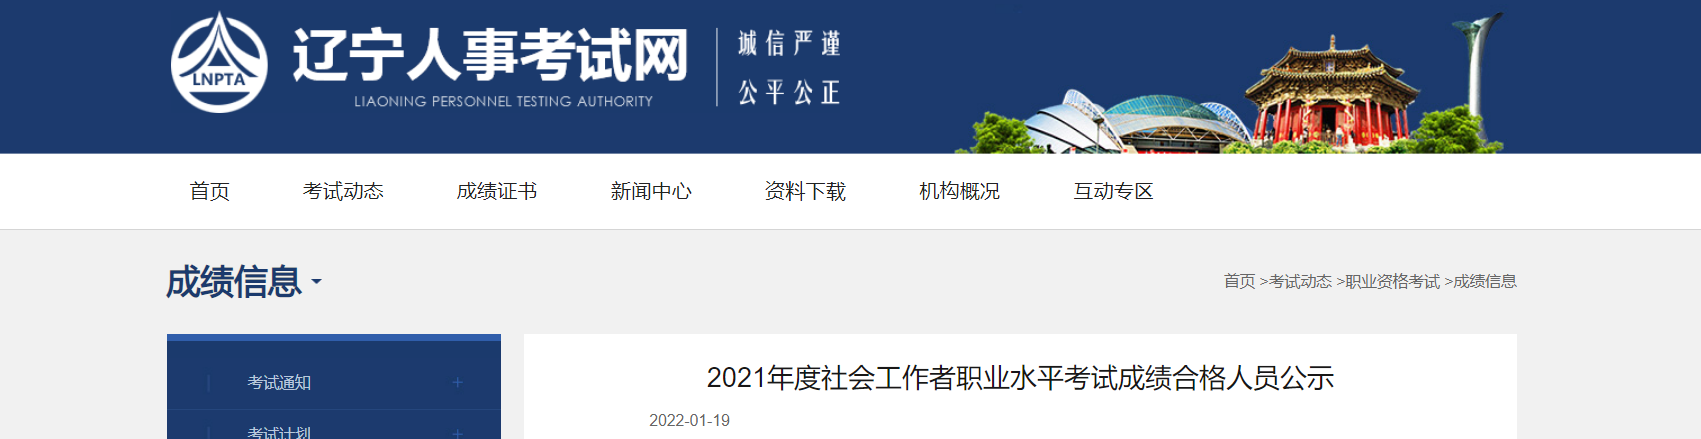 2021年辽宁社会工作者职业水平考试成绩合格人员公示